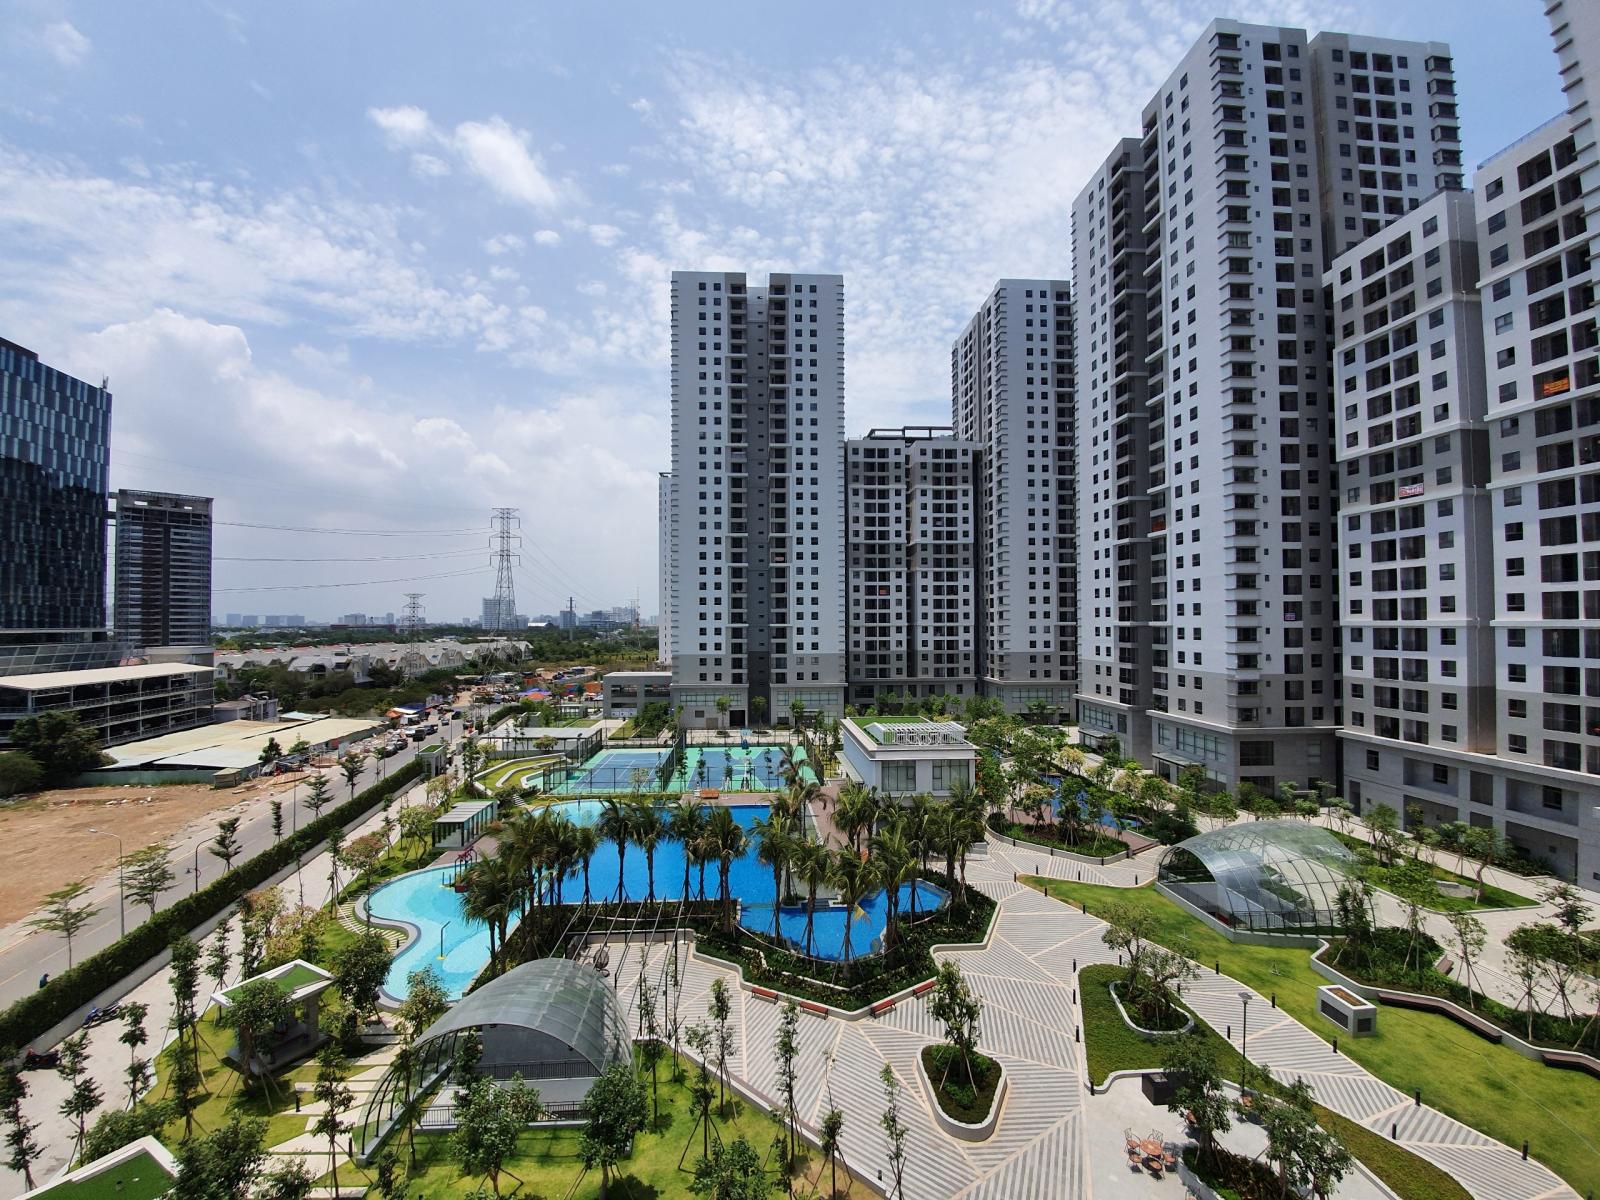 Bán căn hộ SSR căn hộ G6-07,Diện tích : 96 m2 khu vực Trần Thái, Phước Kiểng, Nhà Bè Liên hệ: C.Vy, 0909725455